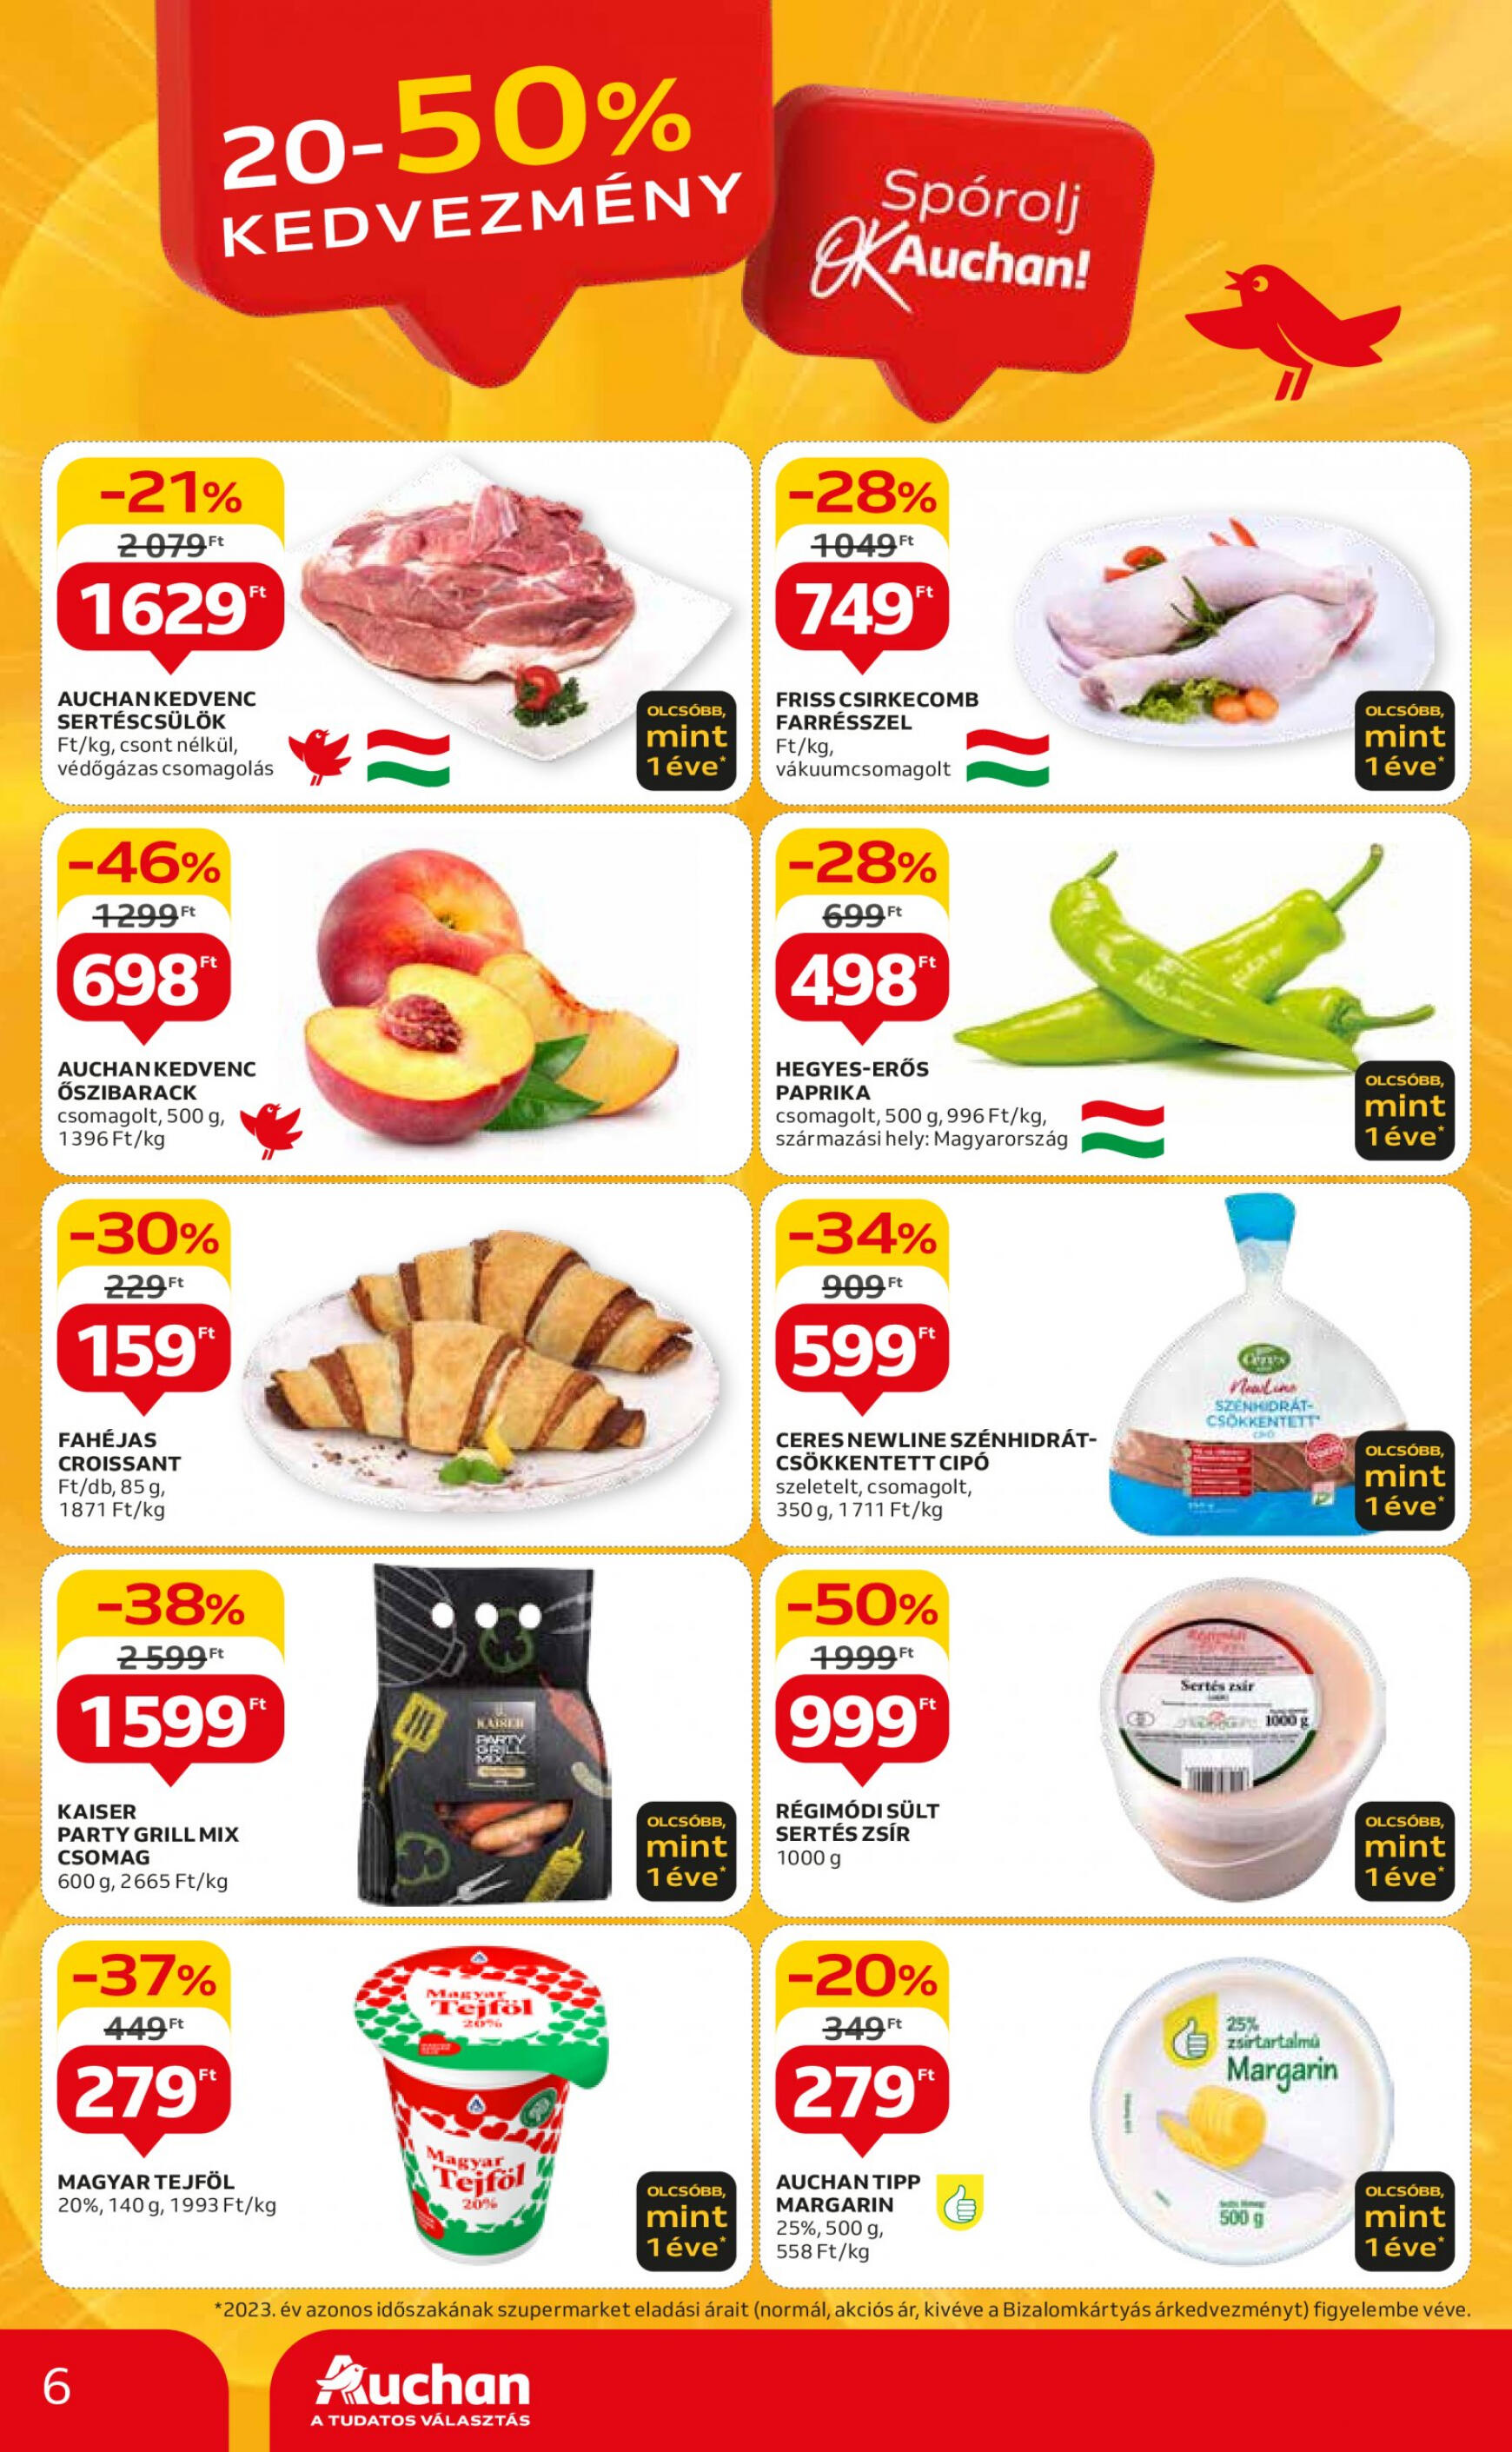 auchan - Aktuális újság Auchan szupermarket 05.09. - 05.15. - page: 6